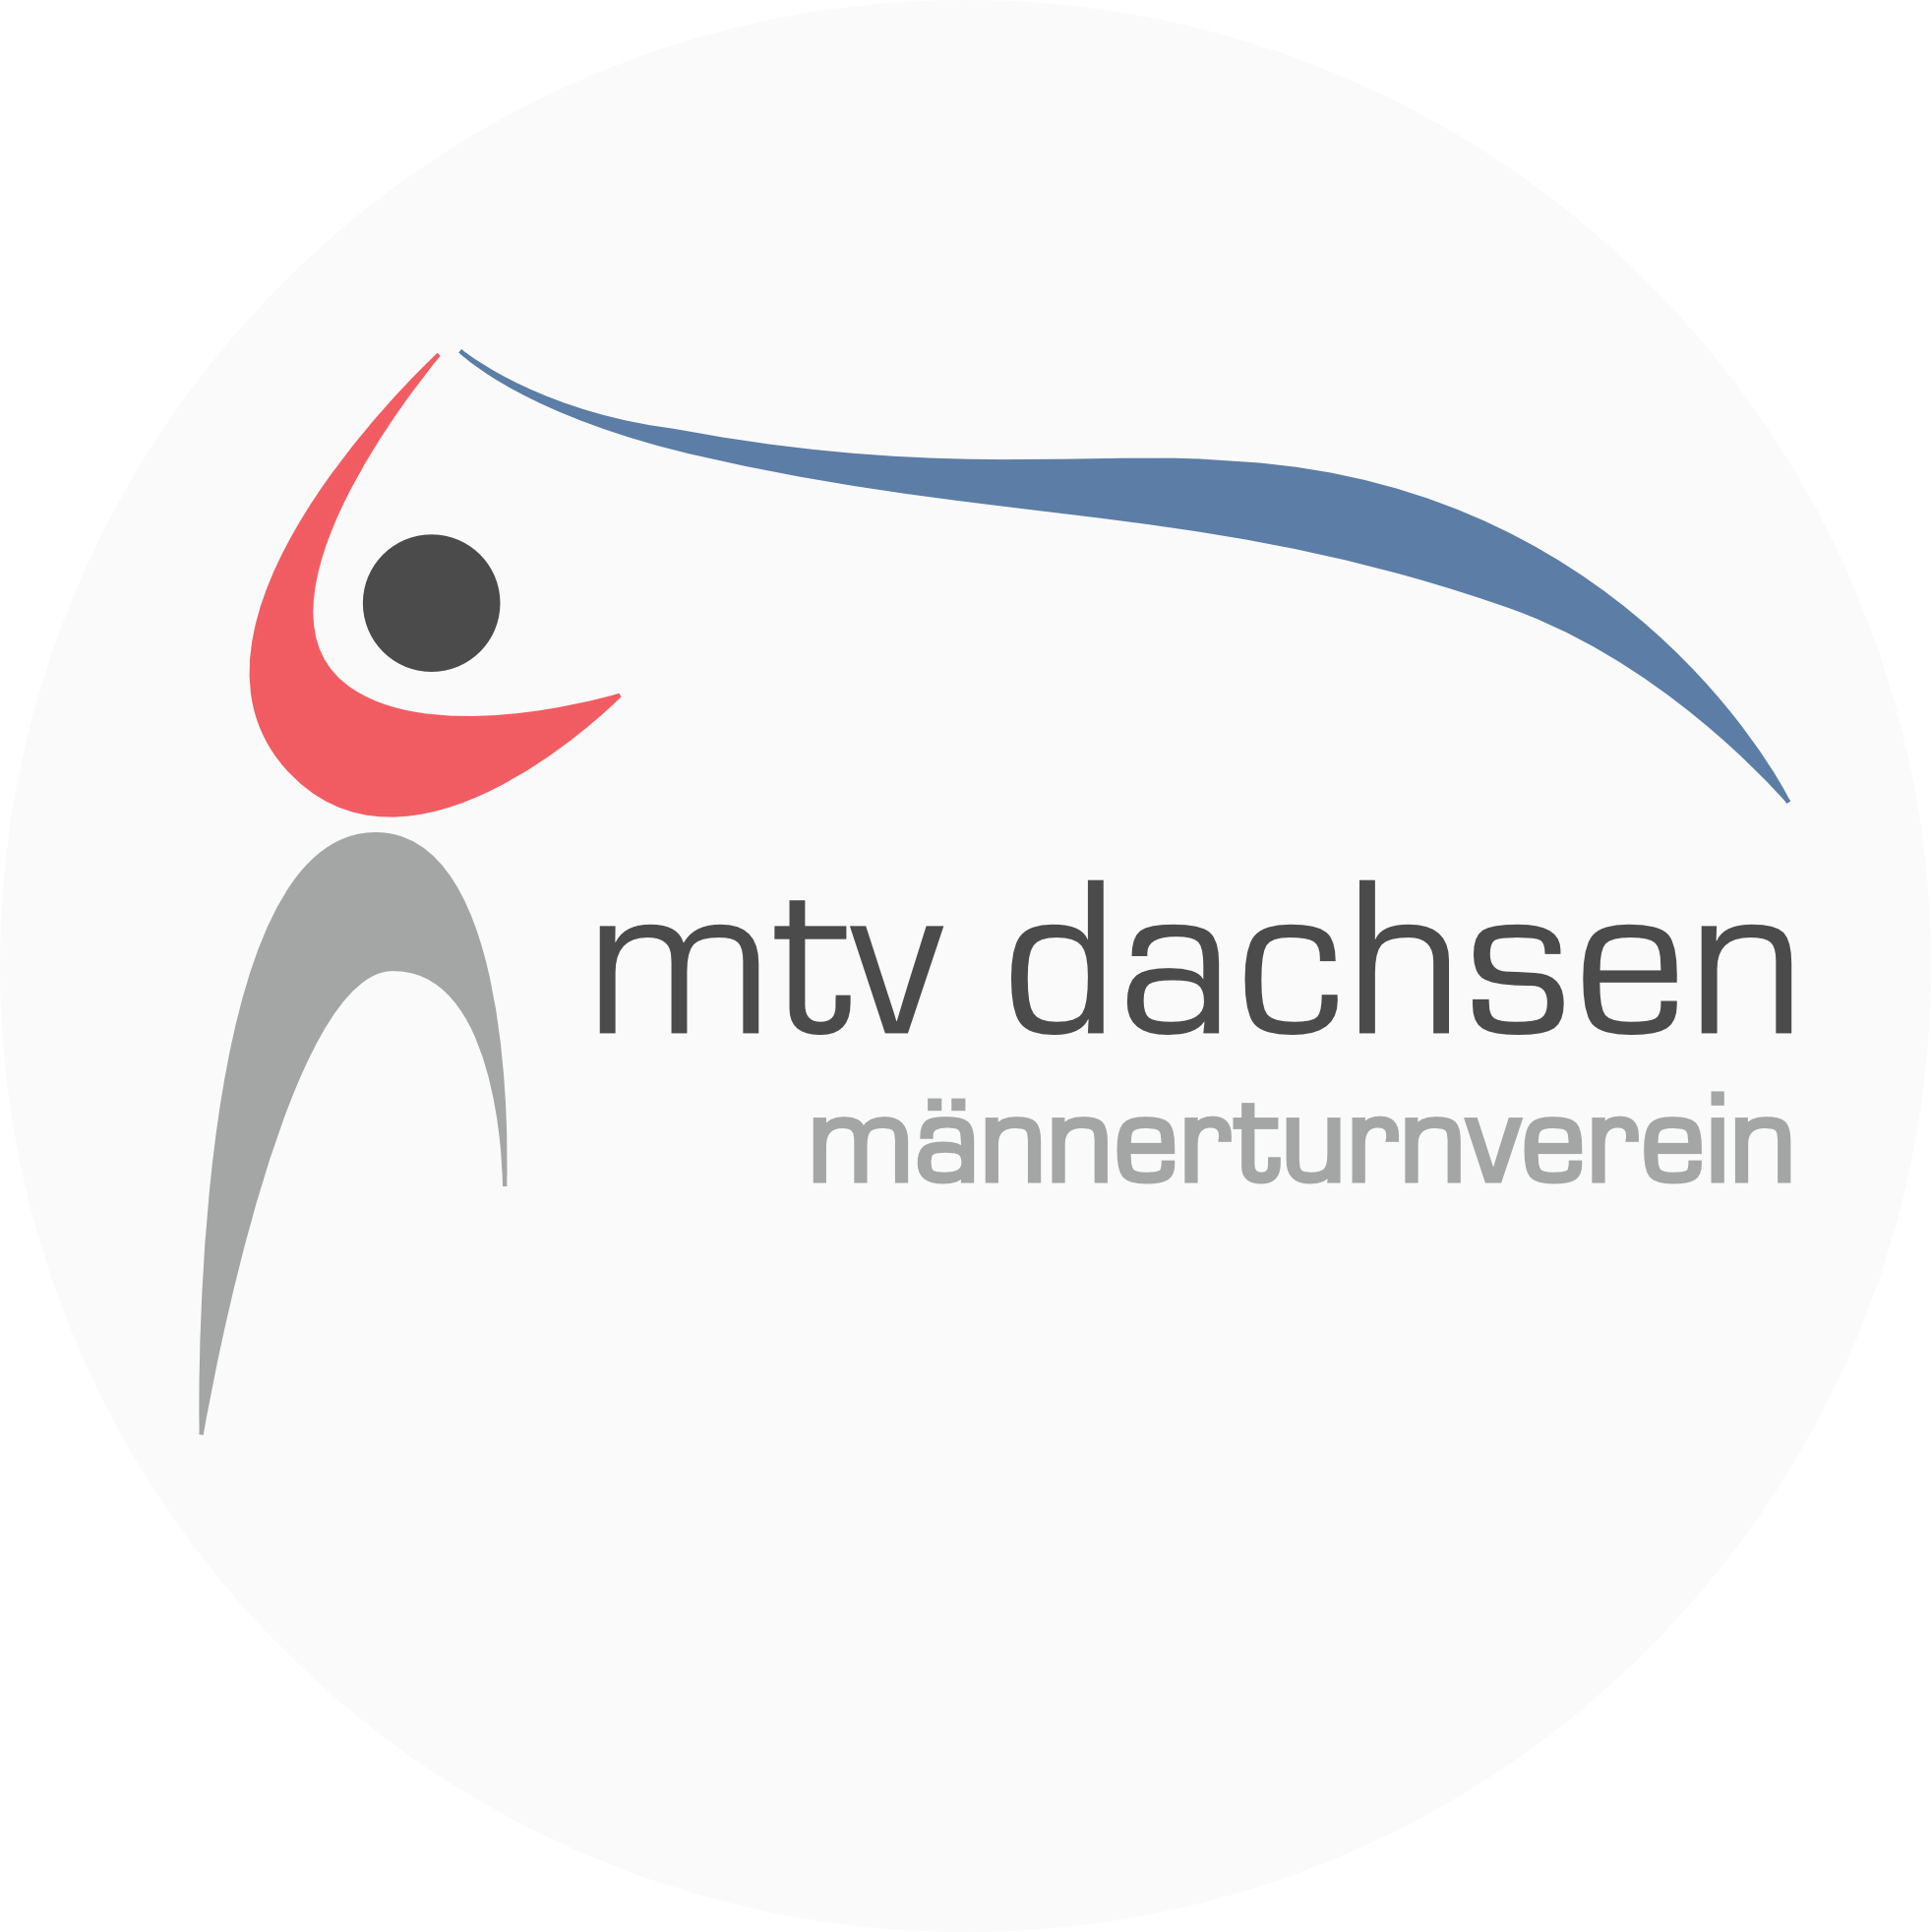 MTV Dachsen